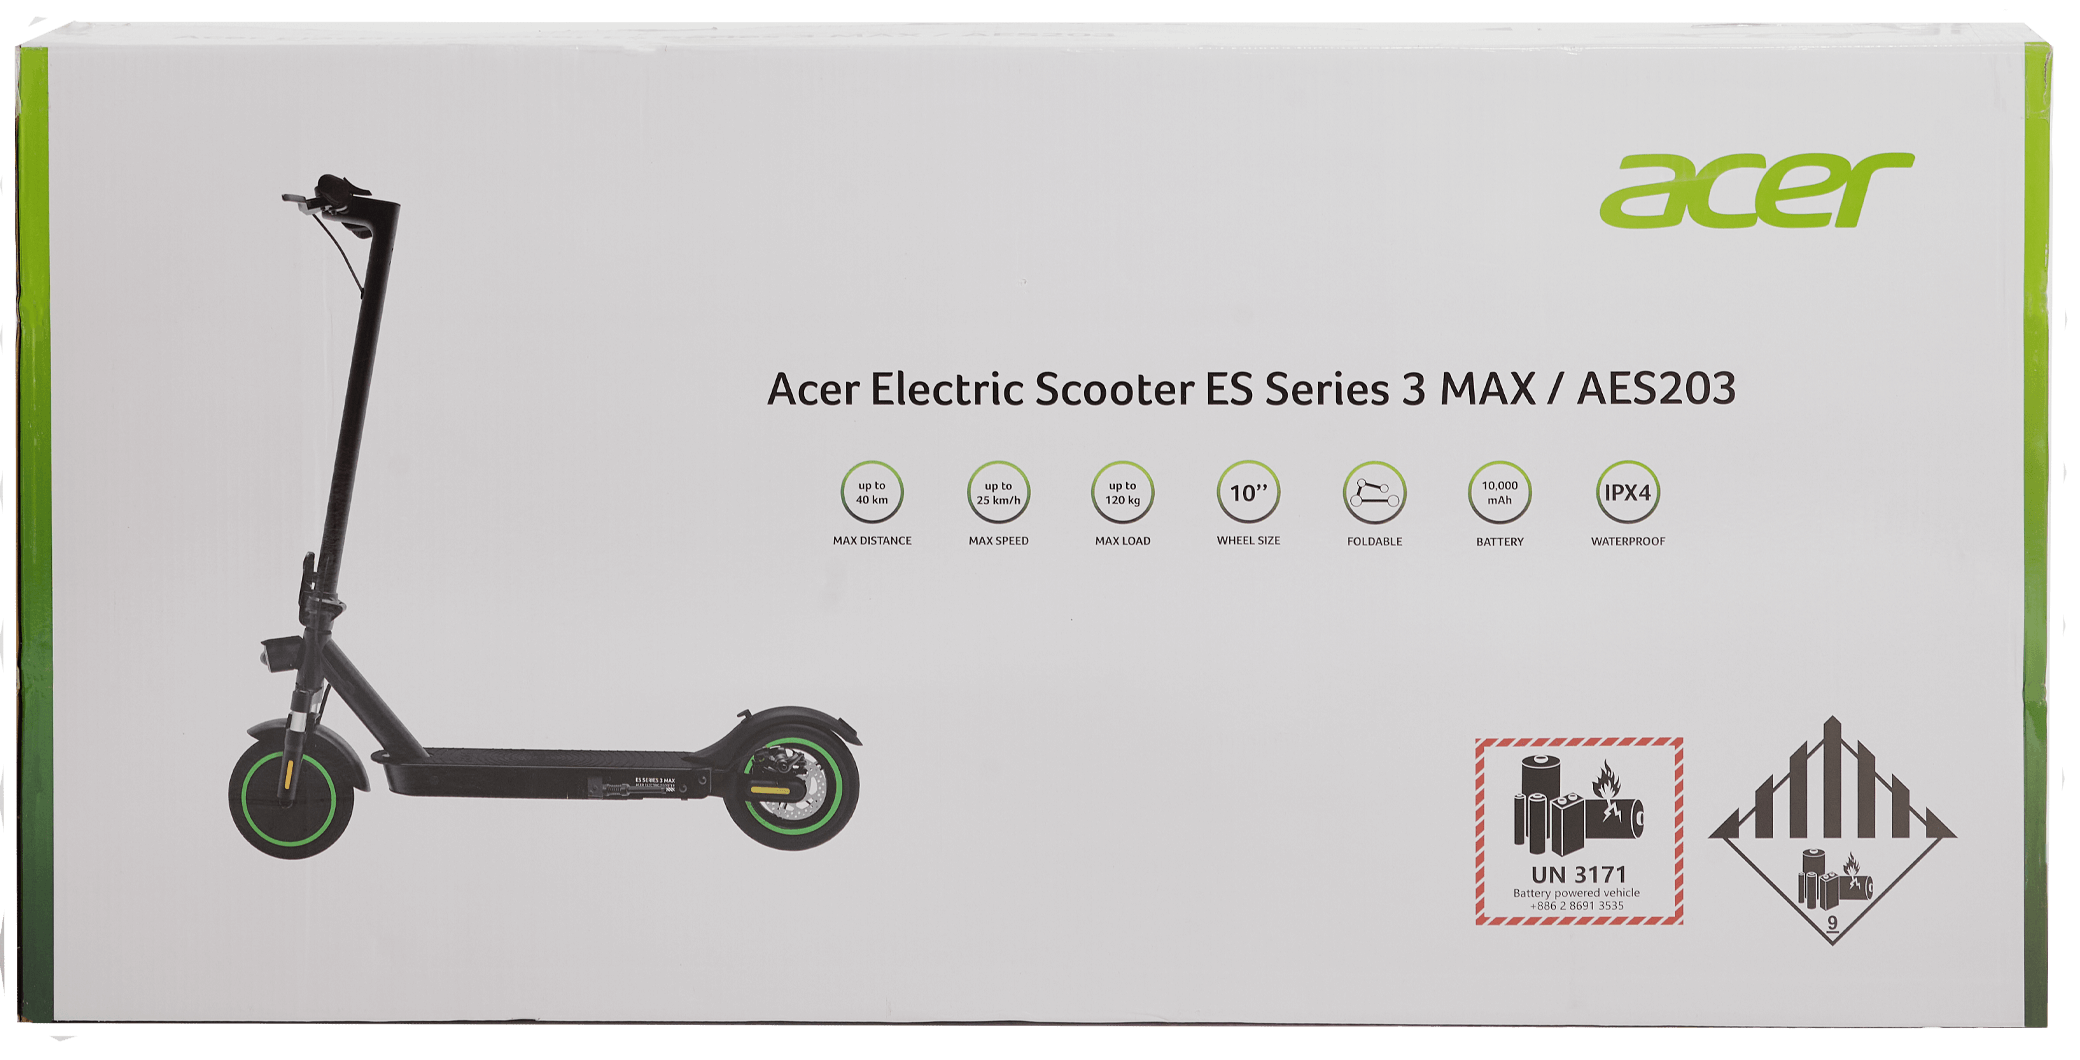 Электросамокат acer series 3. Электросамокат Acer es Series 3. Aes203 электросамокат Acer. Электрический самокат Acer aes103. Электросамокат Acer aes001.